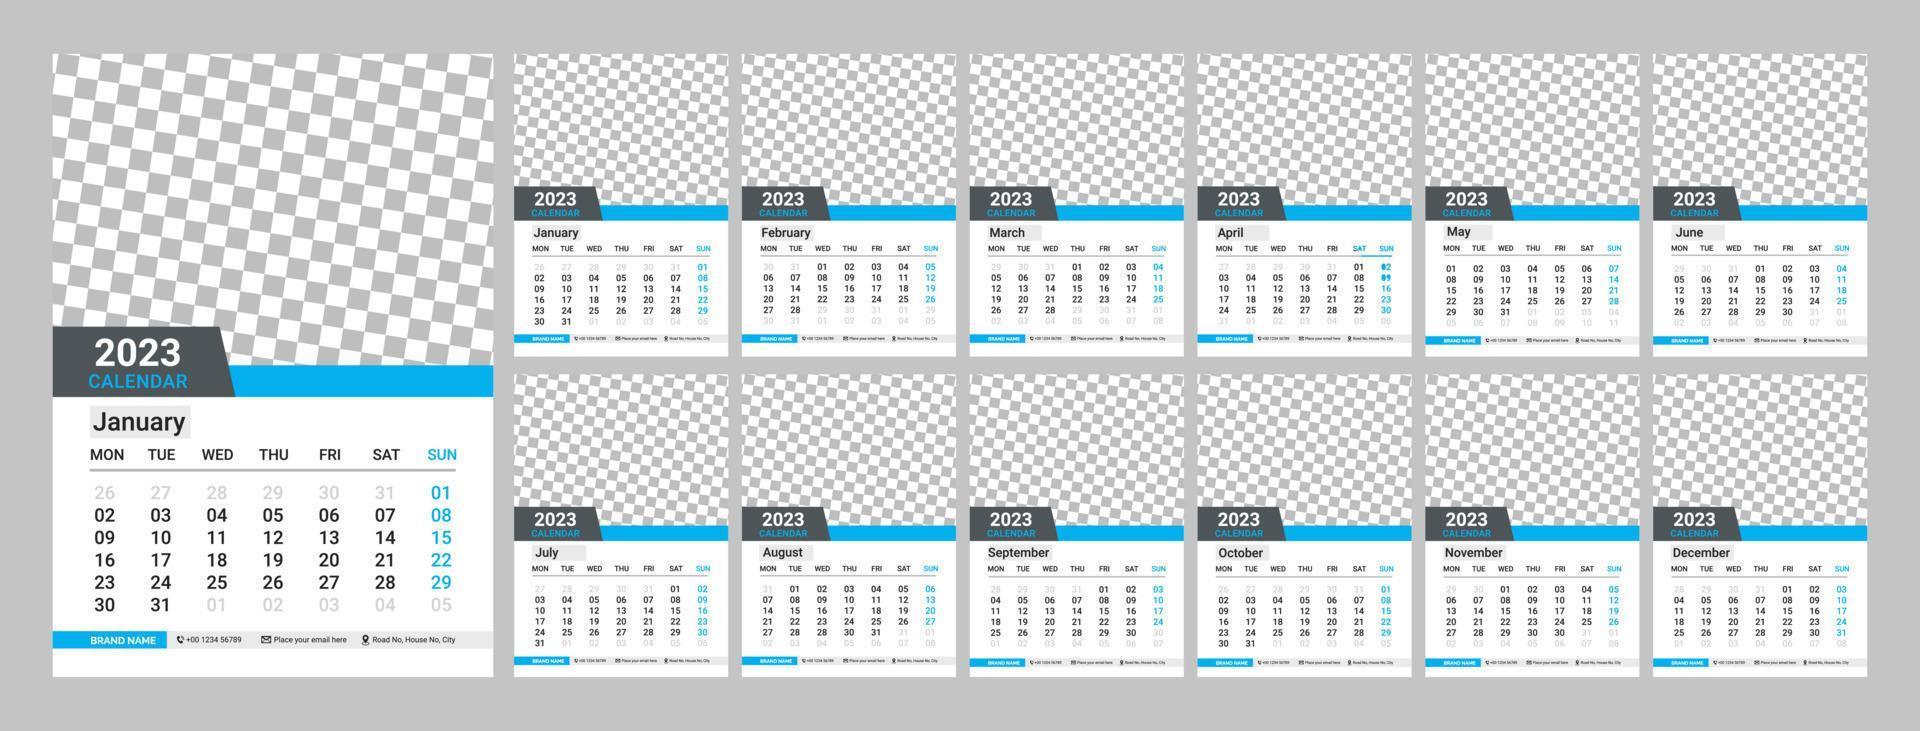 muur kalender ontwerp 2023. maandelijks kalender 2023. 12 maanden. bewerkbare kalender bladzijde sjabloon vector